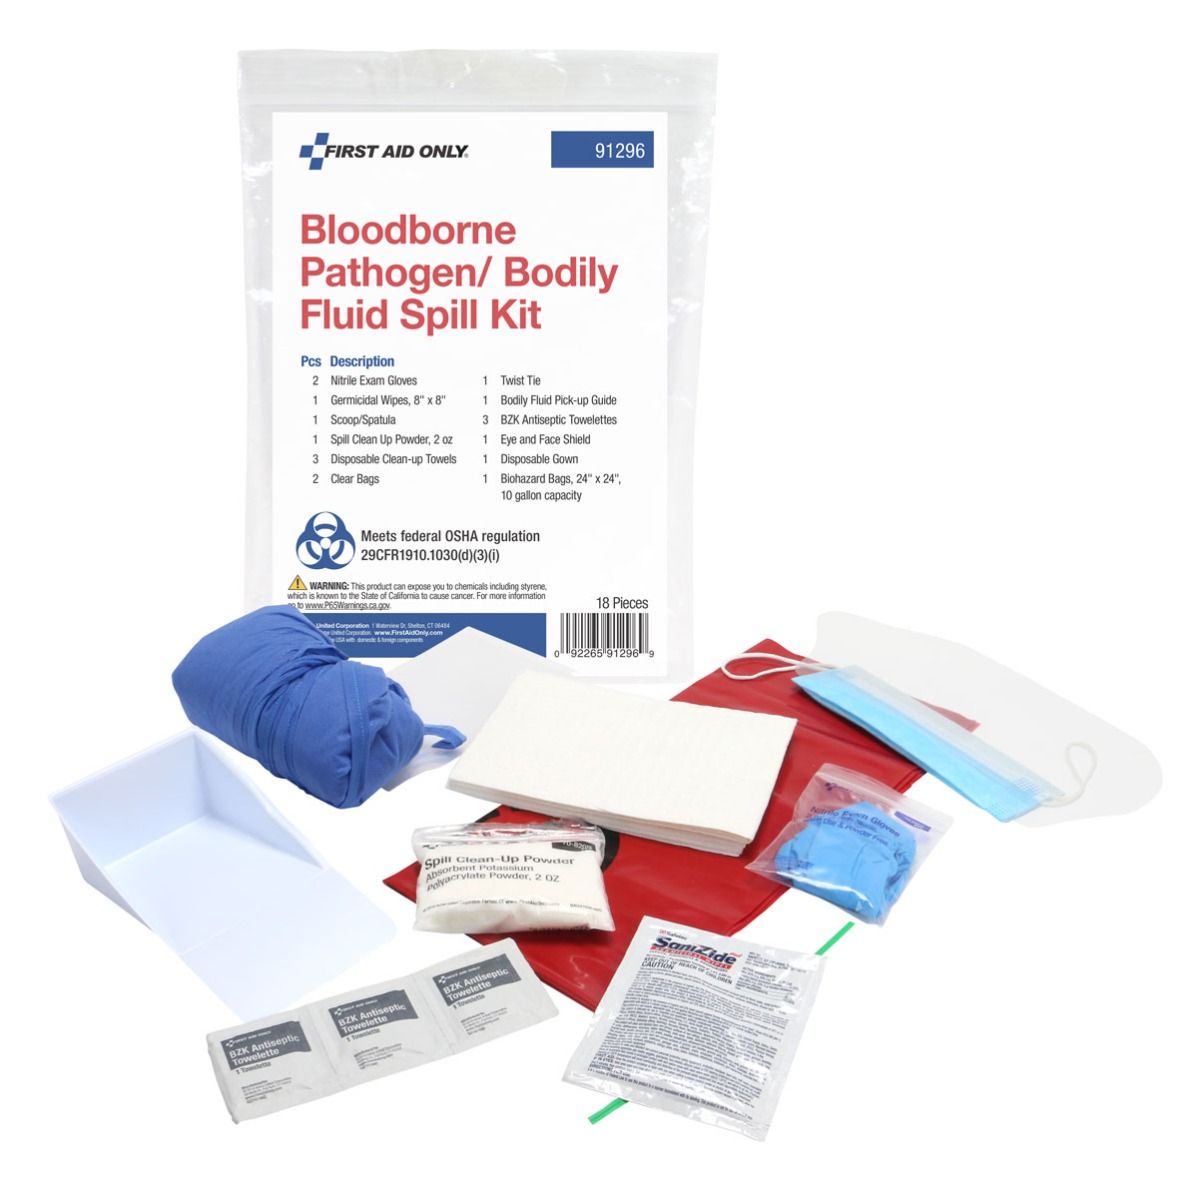 BLOODBORNE PATHOGEN/BODY FLUID SPILL KIT - Bloodborne Pathogen & CPR